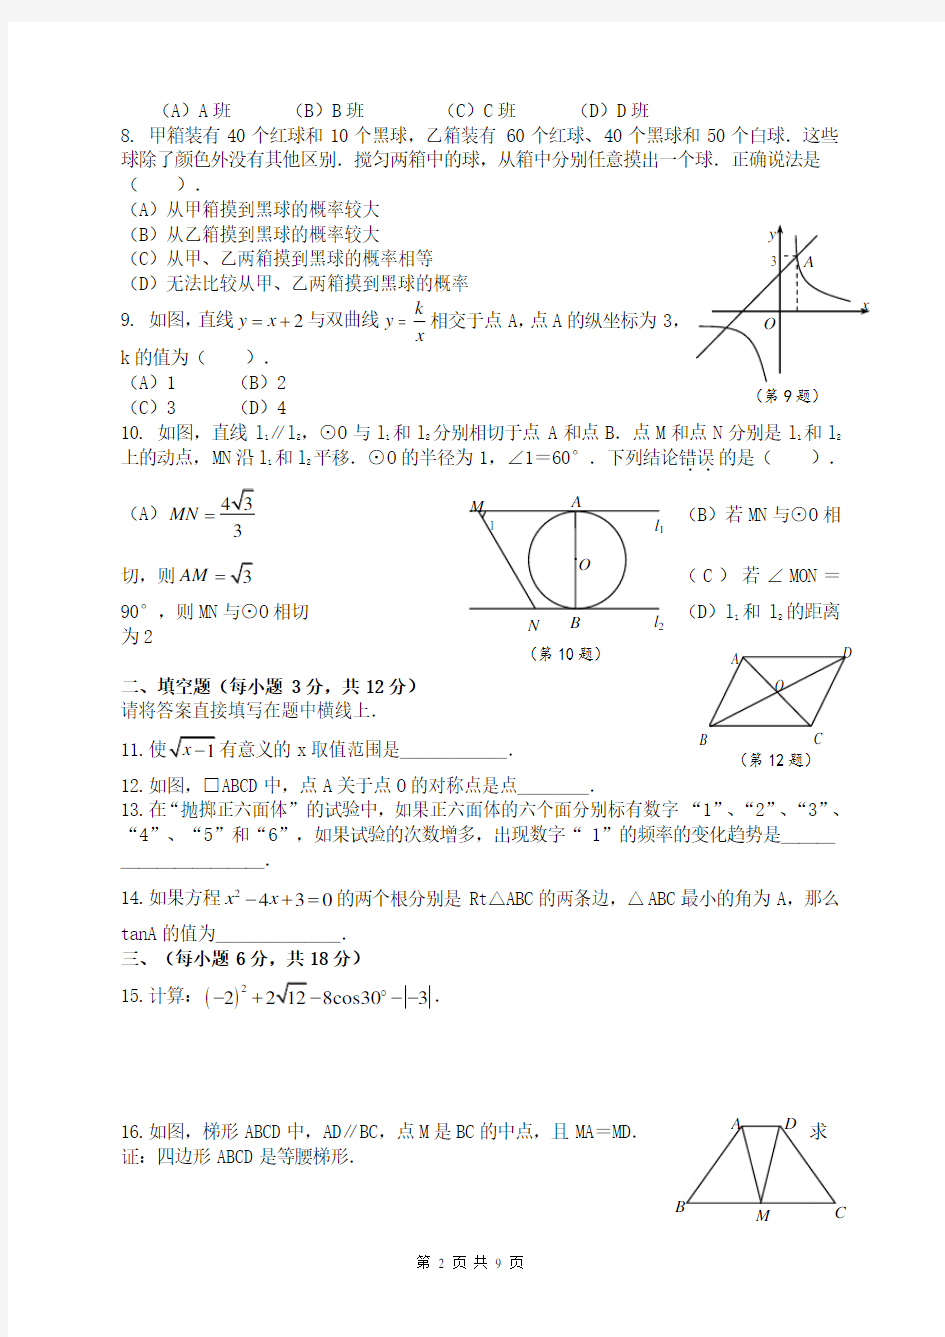 2014年广安友谊中学自主招生考试数学试题及答案